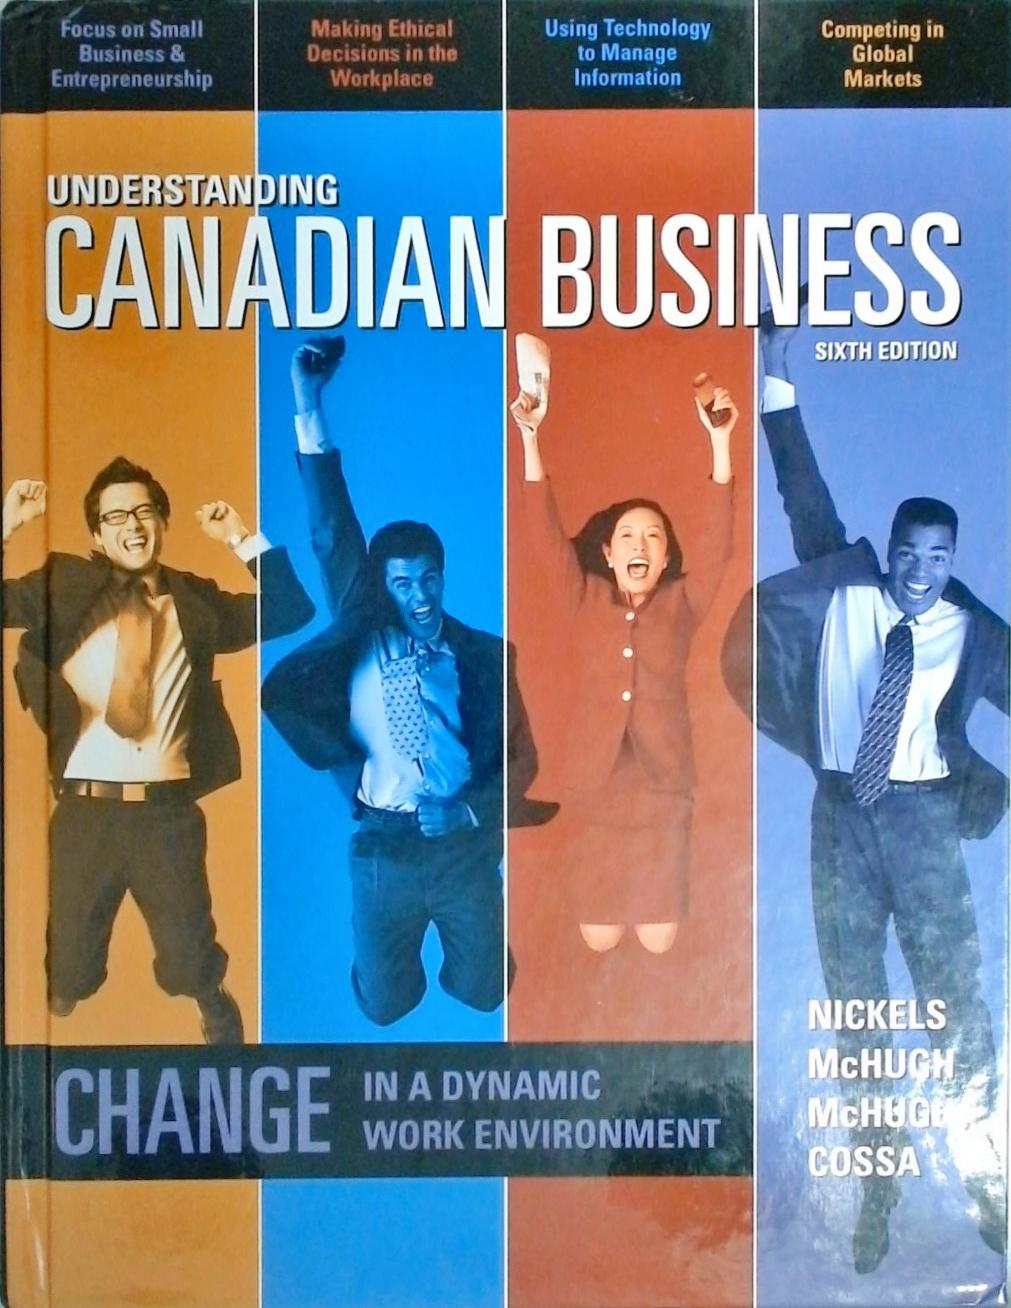 Understanding Canadian Business